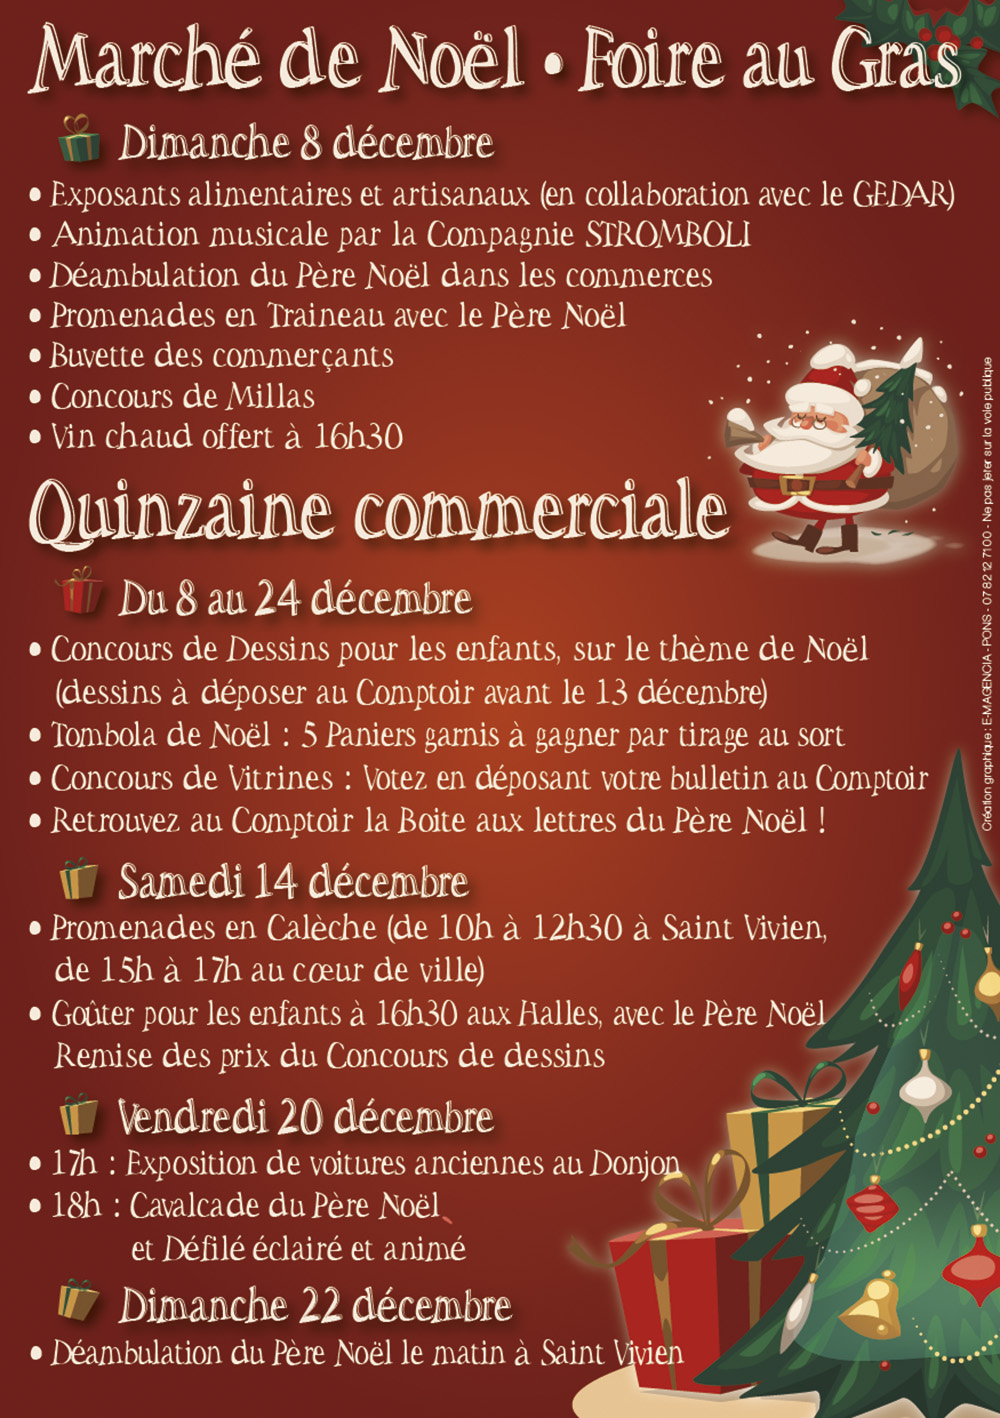 Marché de Noël 2019 - Pons Actions Commerciales - Dimanche 8 décembre 2019